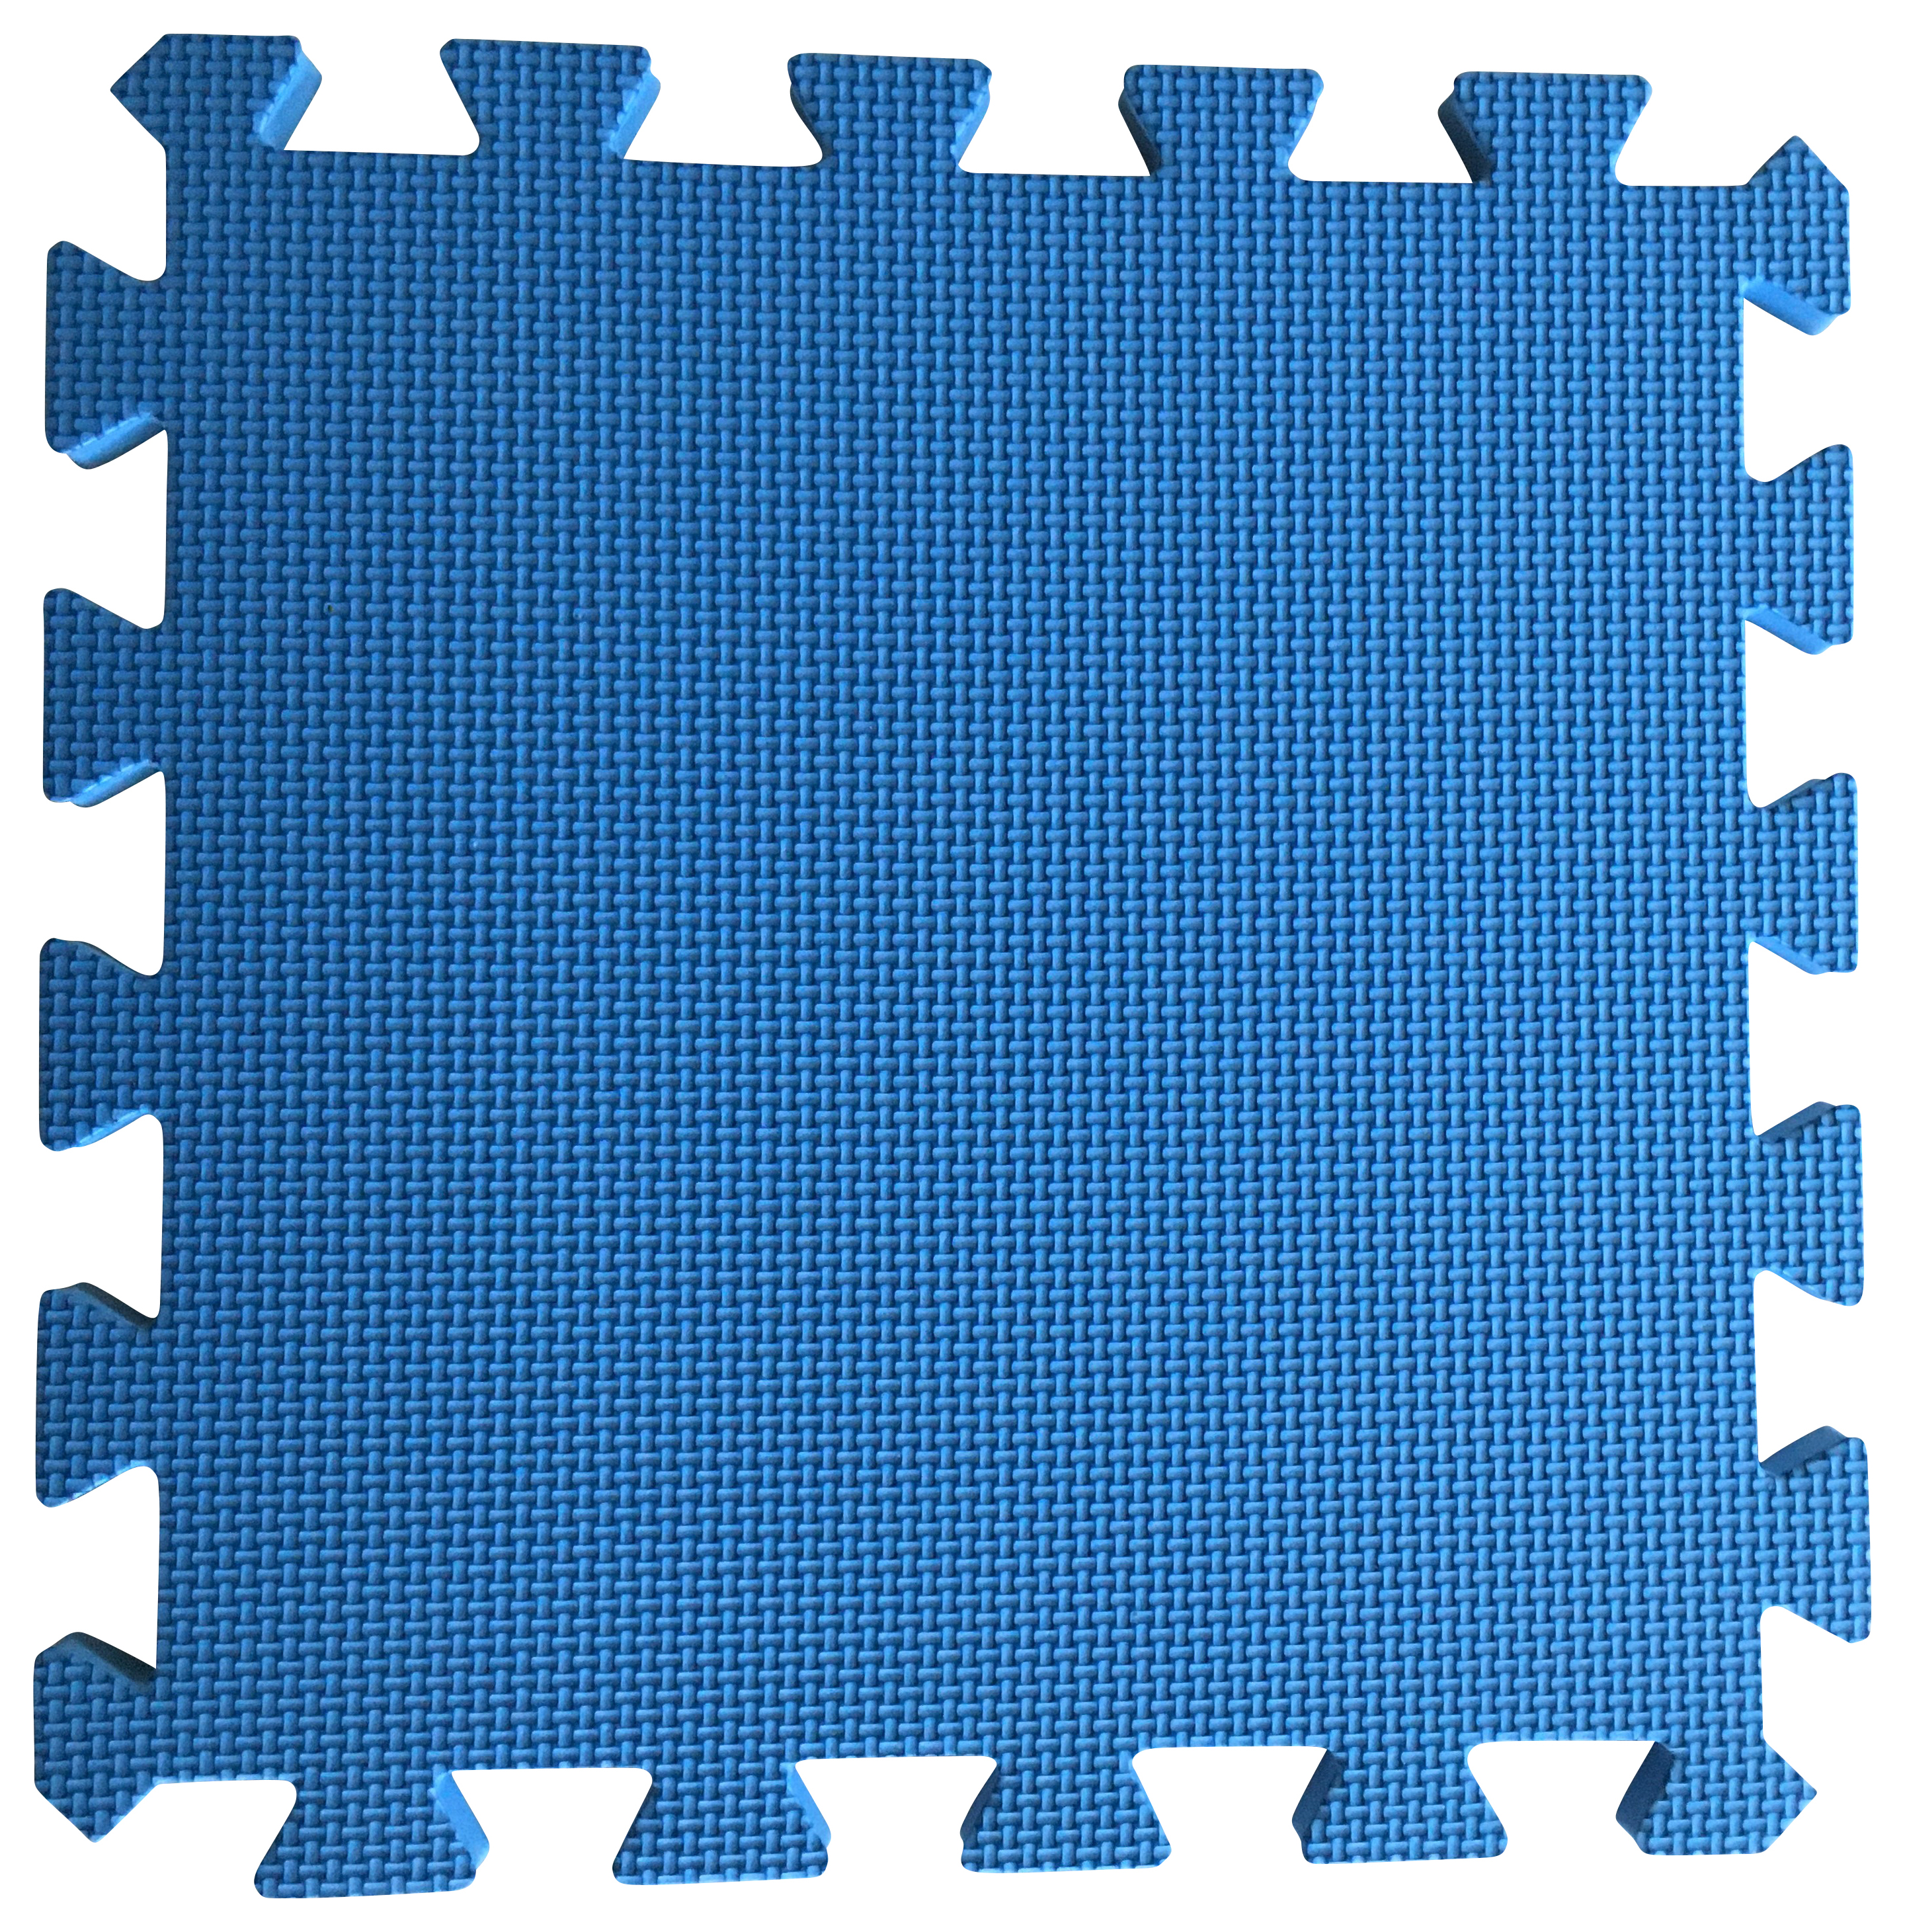 Warm Floor Blue Interlocking Floor Tiles for Garden Buildings - 5 x 10ft